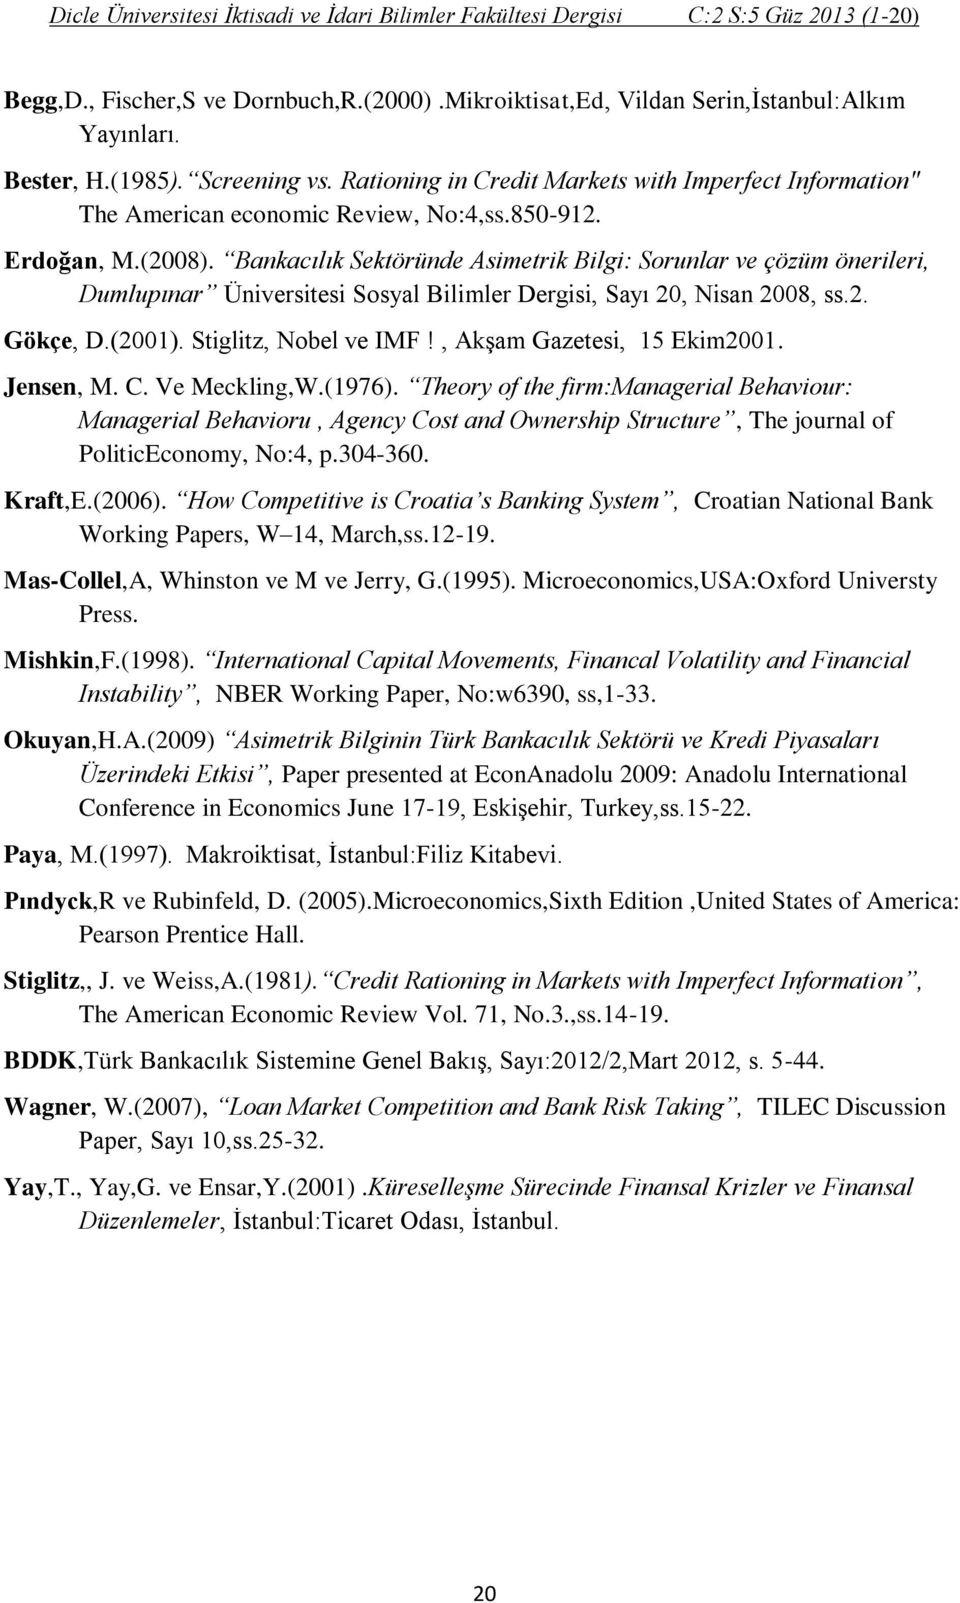 Bankacılık Sektöründe Asimetrik Bilgi: Sorunlar ve çözüm önerileri, Dumlupınar Üniversitesi Sosyal Bilimler Dergisi, Sayı 20, Nisan 2008, ss.2. Gökçe, D.(2001). Stiglitz, Nobel ve IMF!